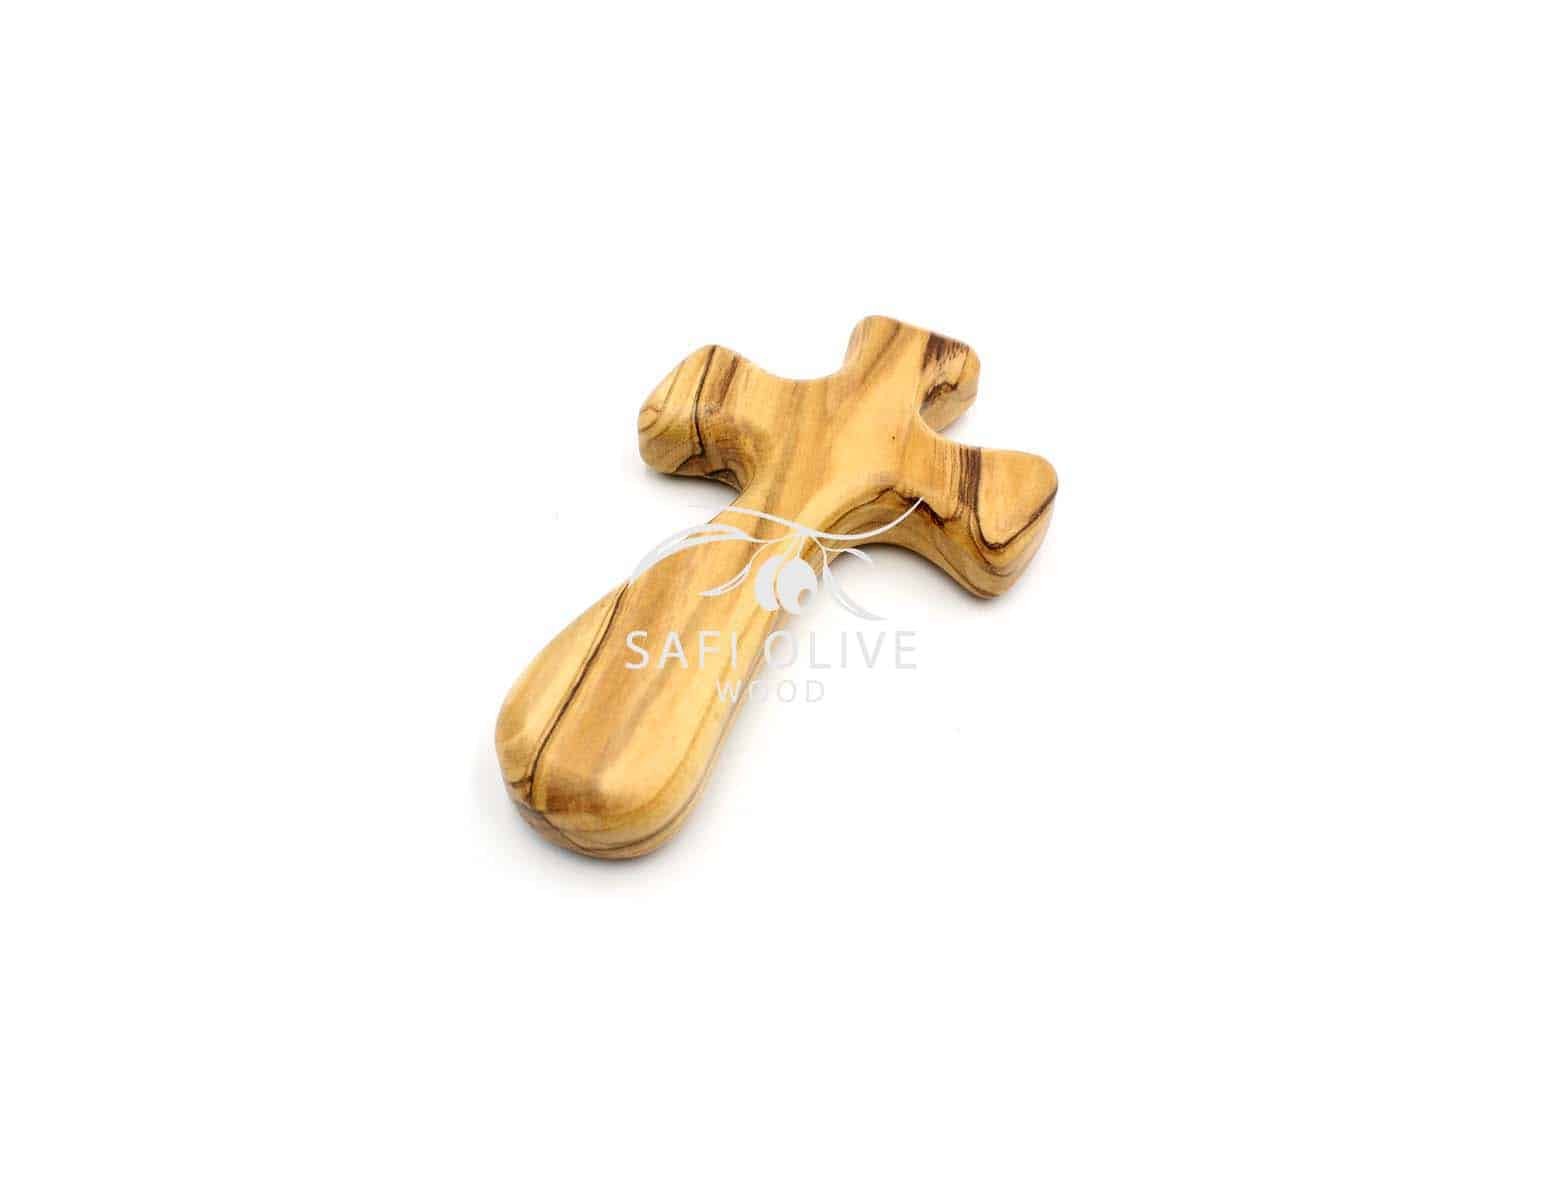 Cruz de mano de madera de olivo (10 CM / 4'') #CR166